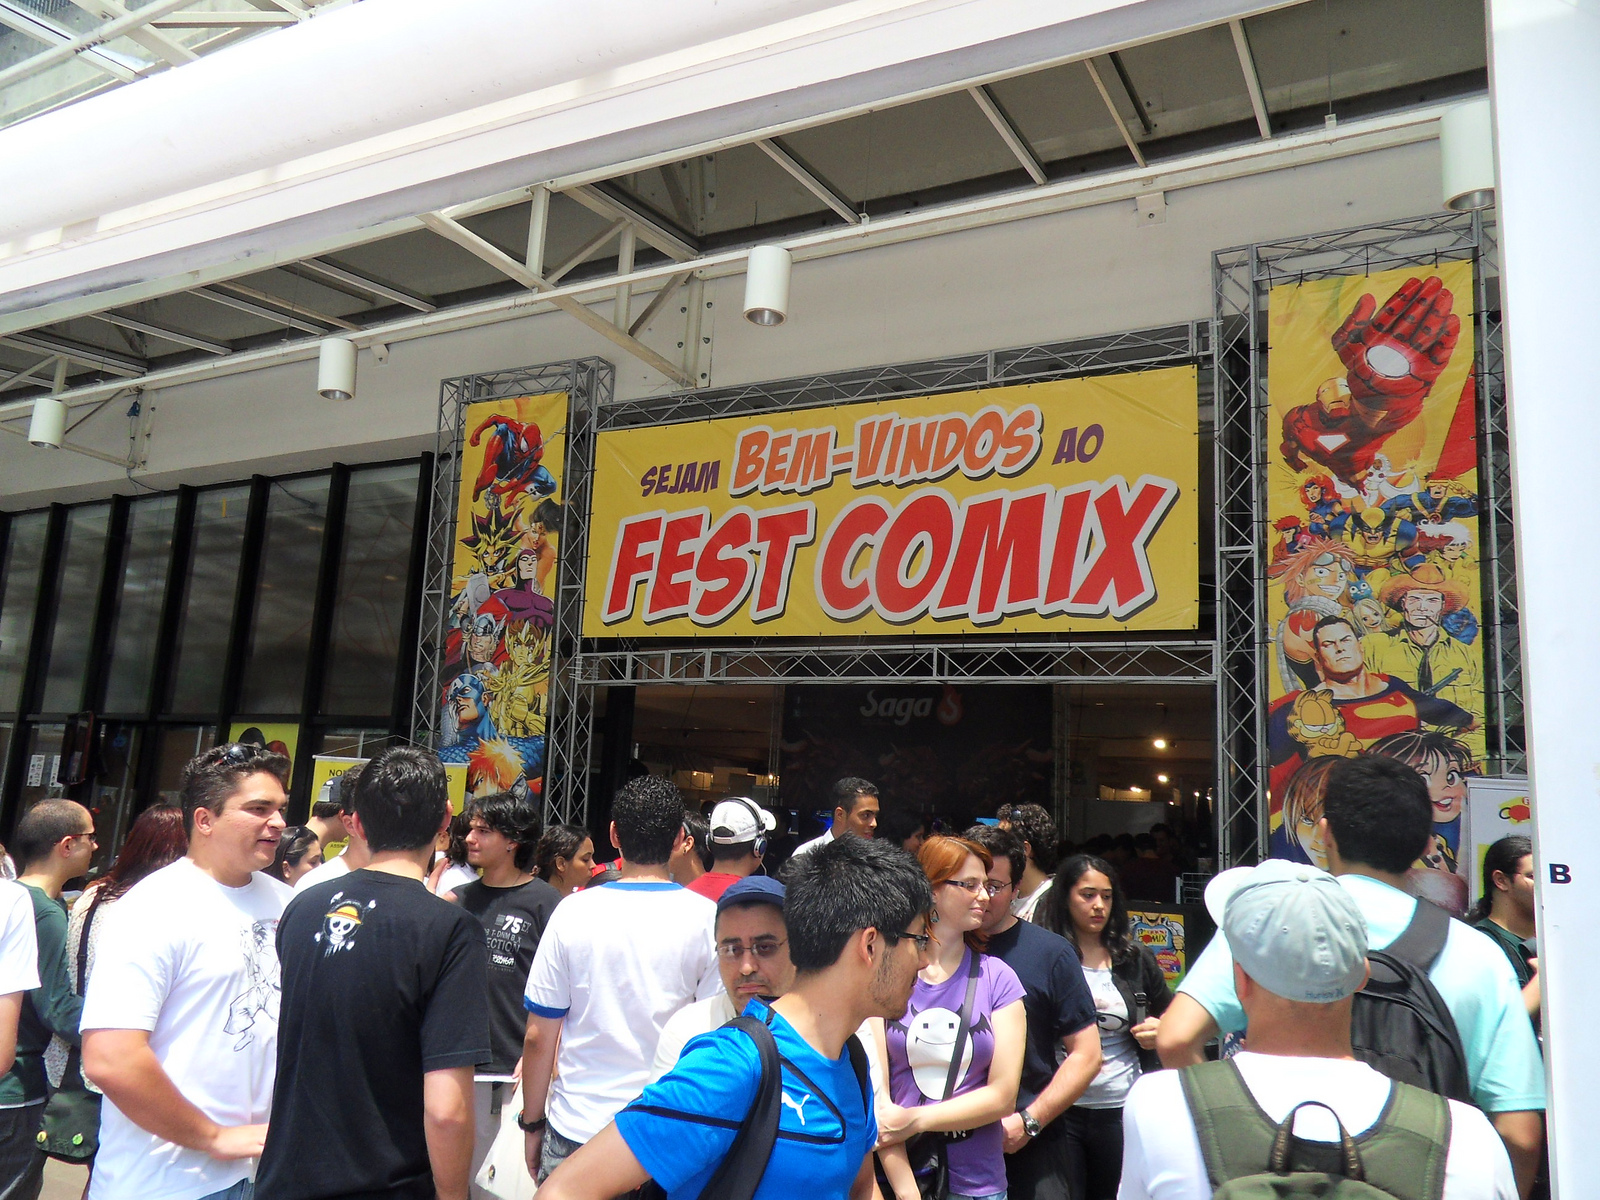 judao - Quadrinhos e Mangás para todos os gostos e idades, aqui em São Paulo!